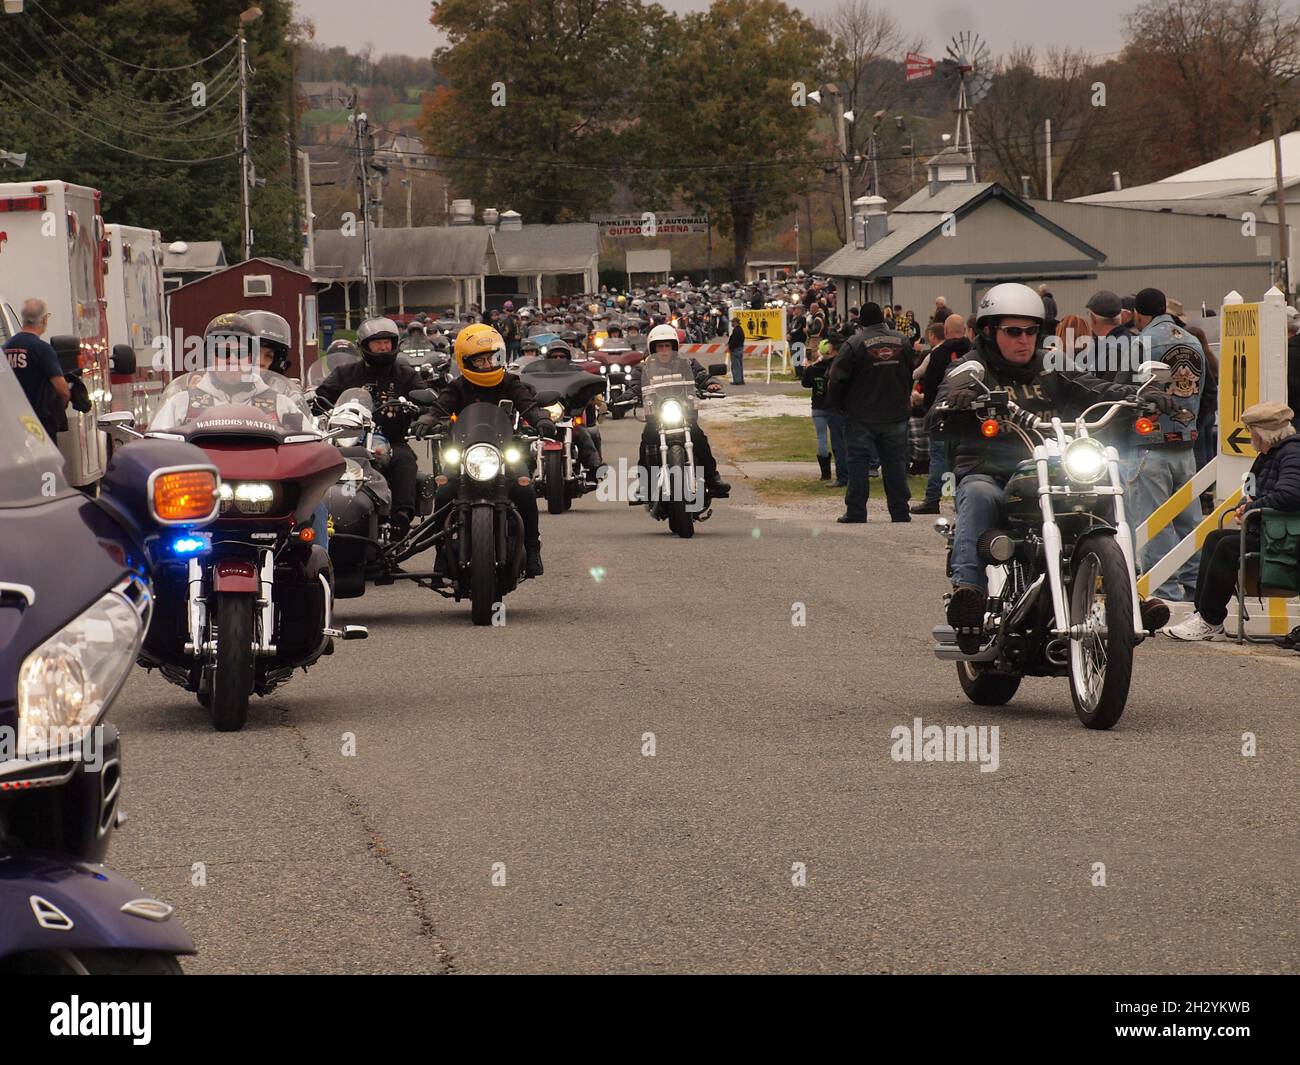 Un rallye moto dans le comté de Sussex, dans le New Jersey, montre des centaines de personnes qui partent sur une route escortée par la police à travers la région.Collecteur de fonds pour les blessés et les morts. Banque D'Images